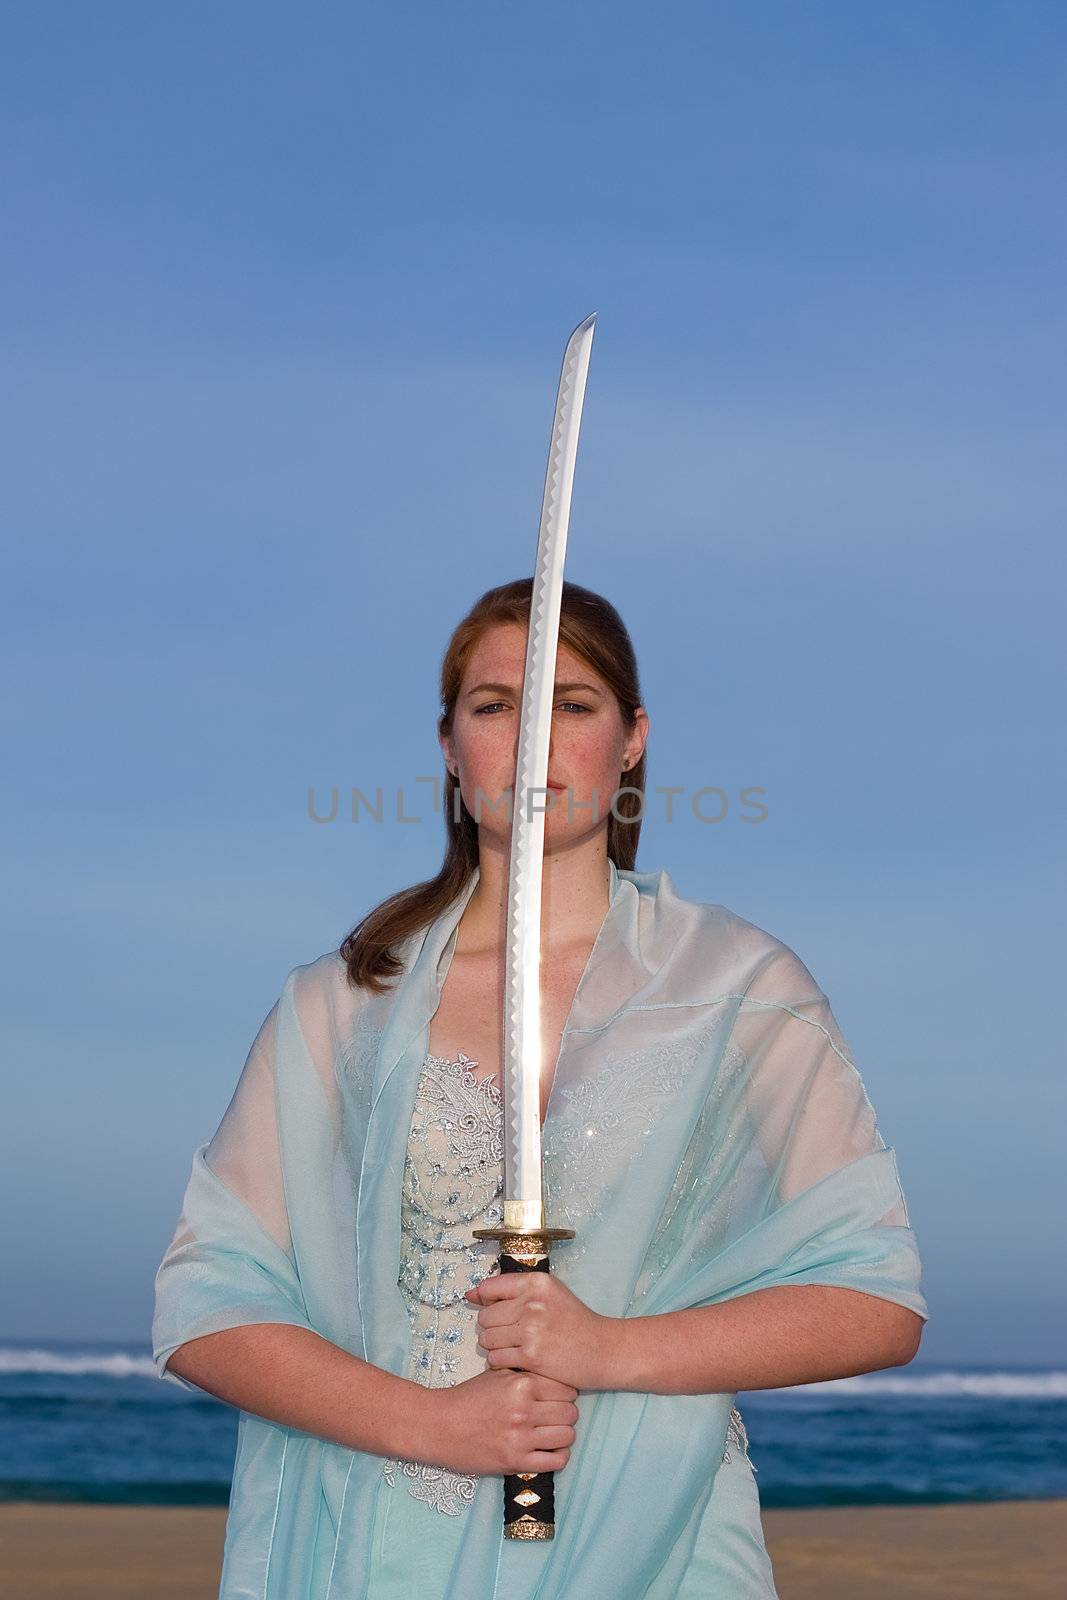 Sword Lady by nightowlza